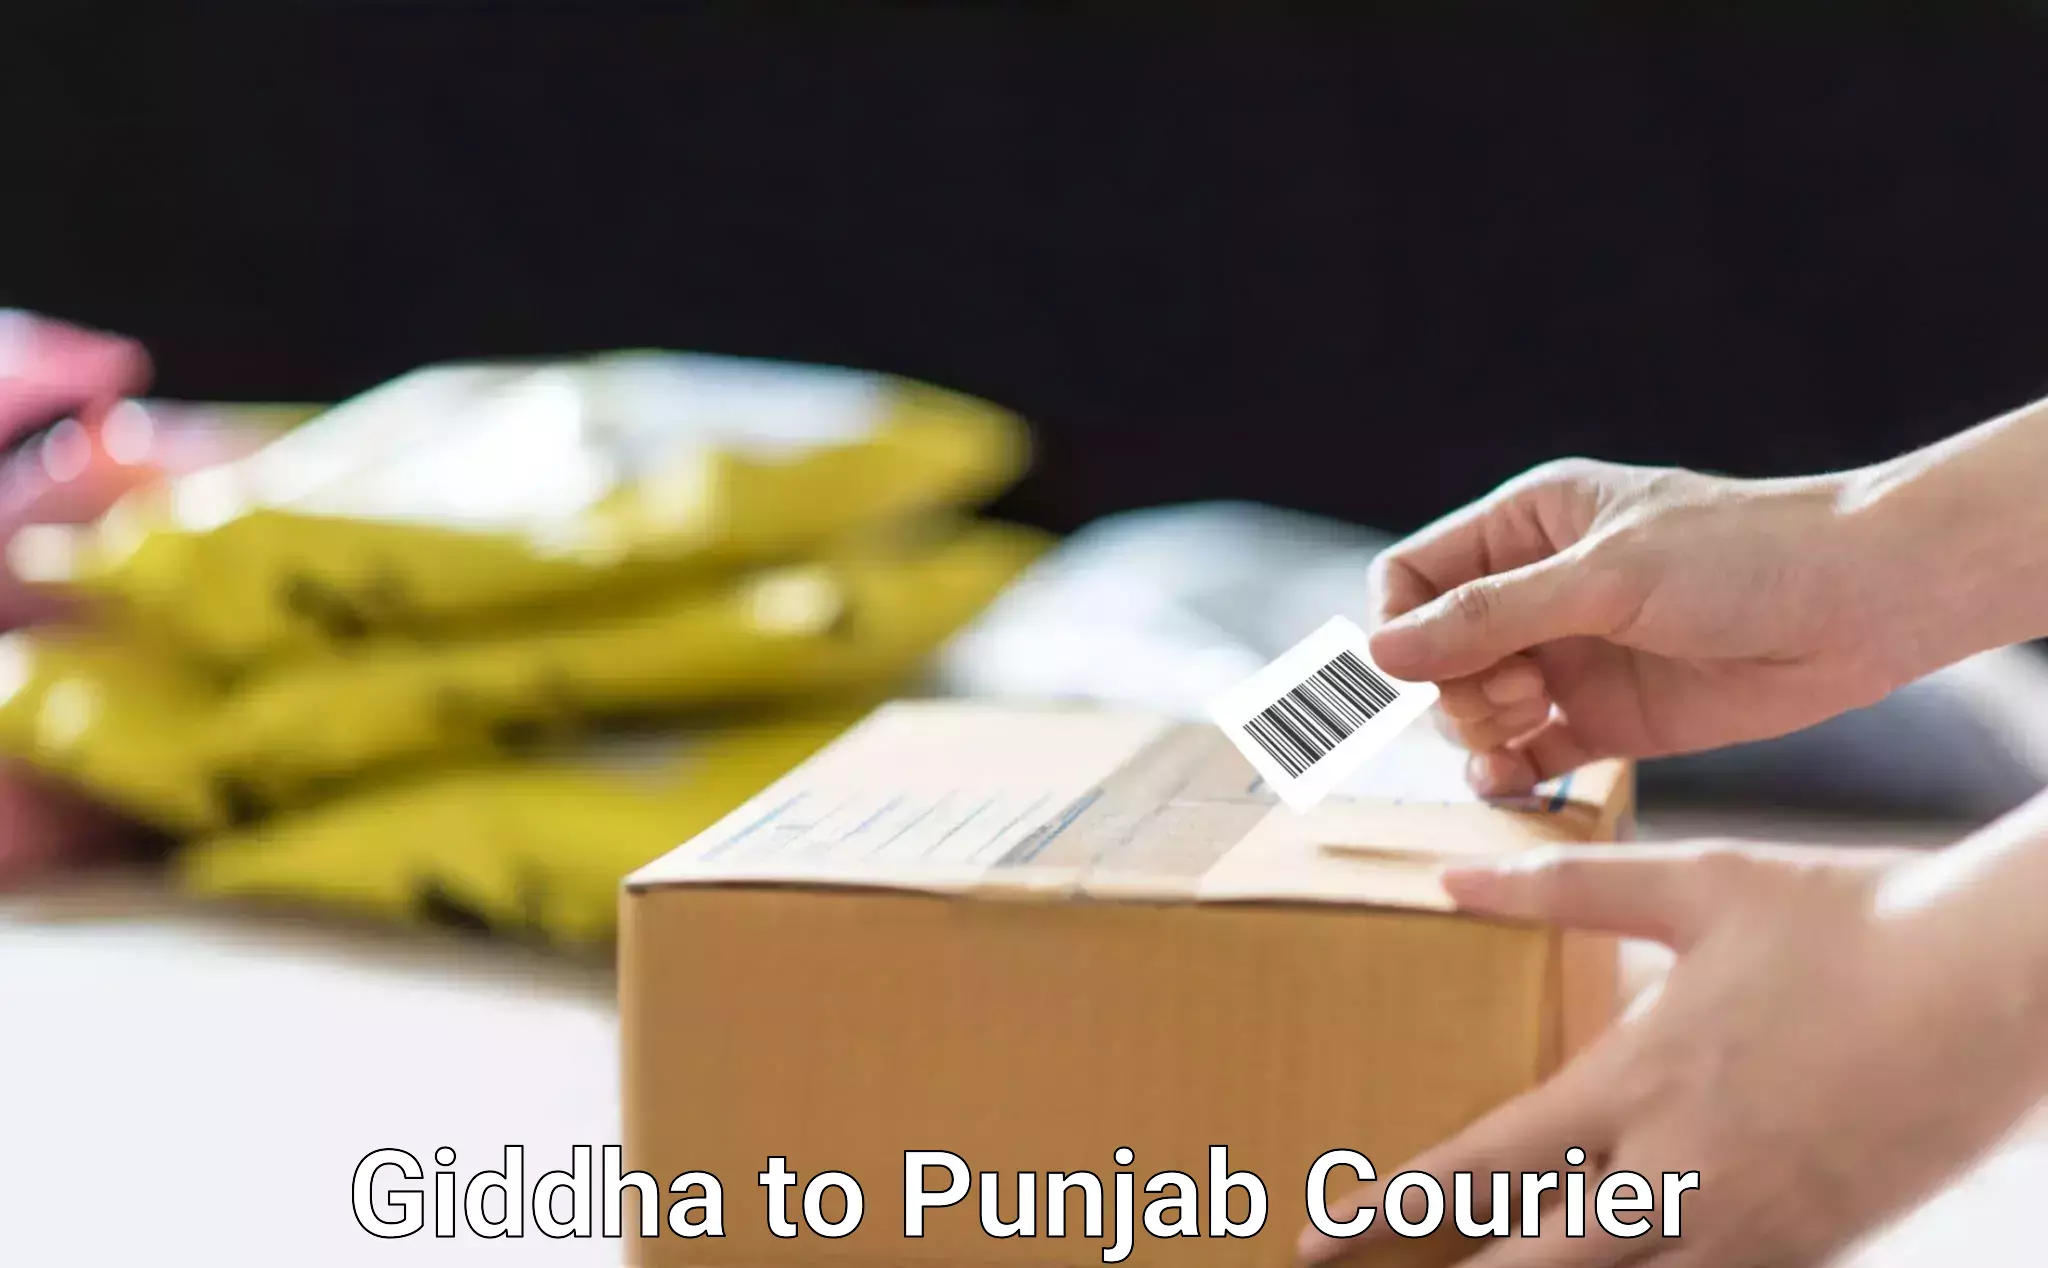 Easy furniture transport Giddha to Punjab